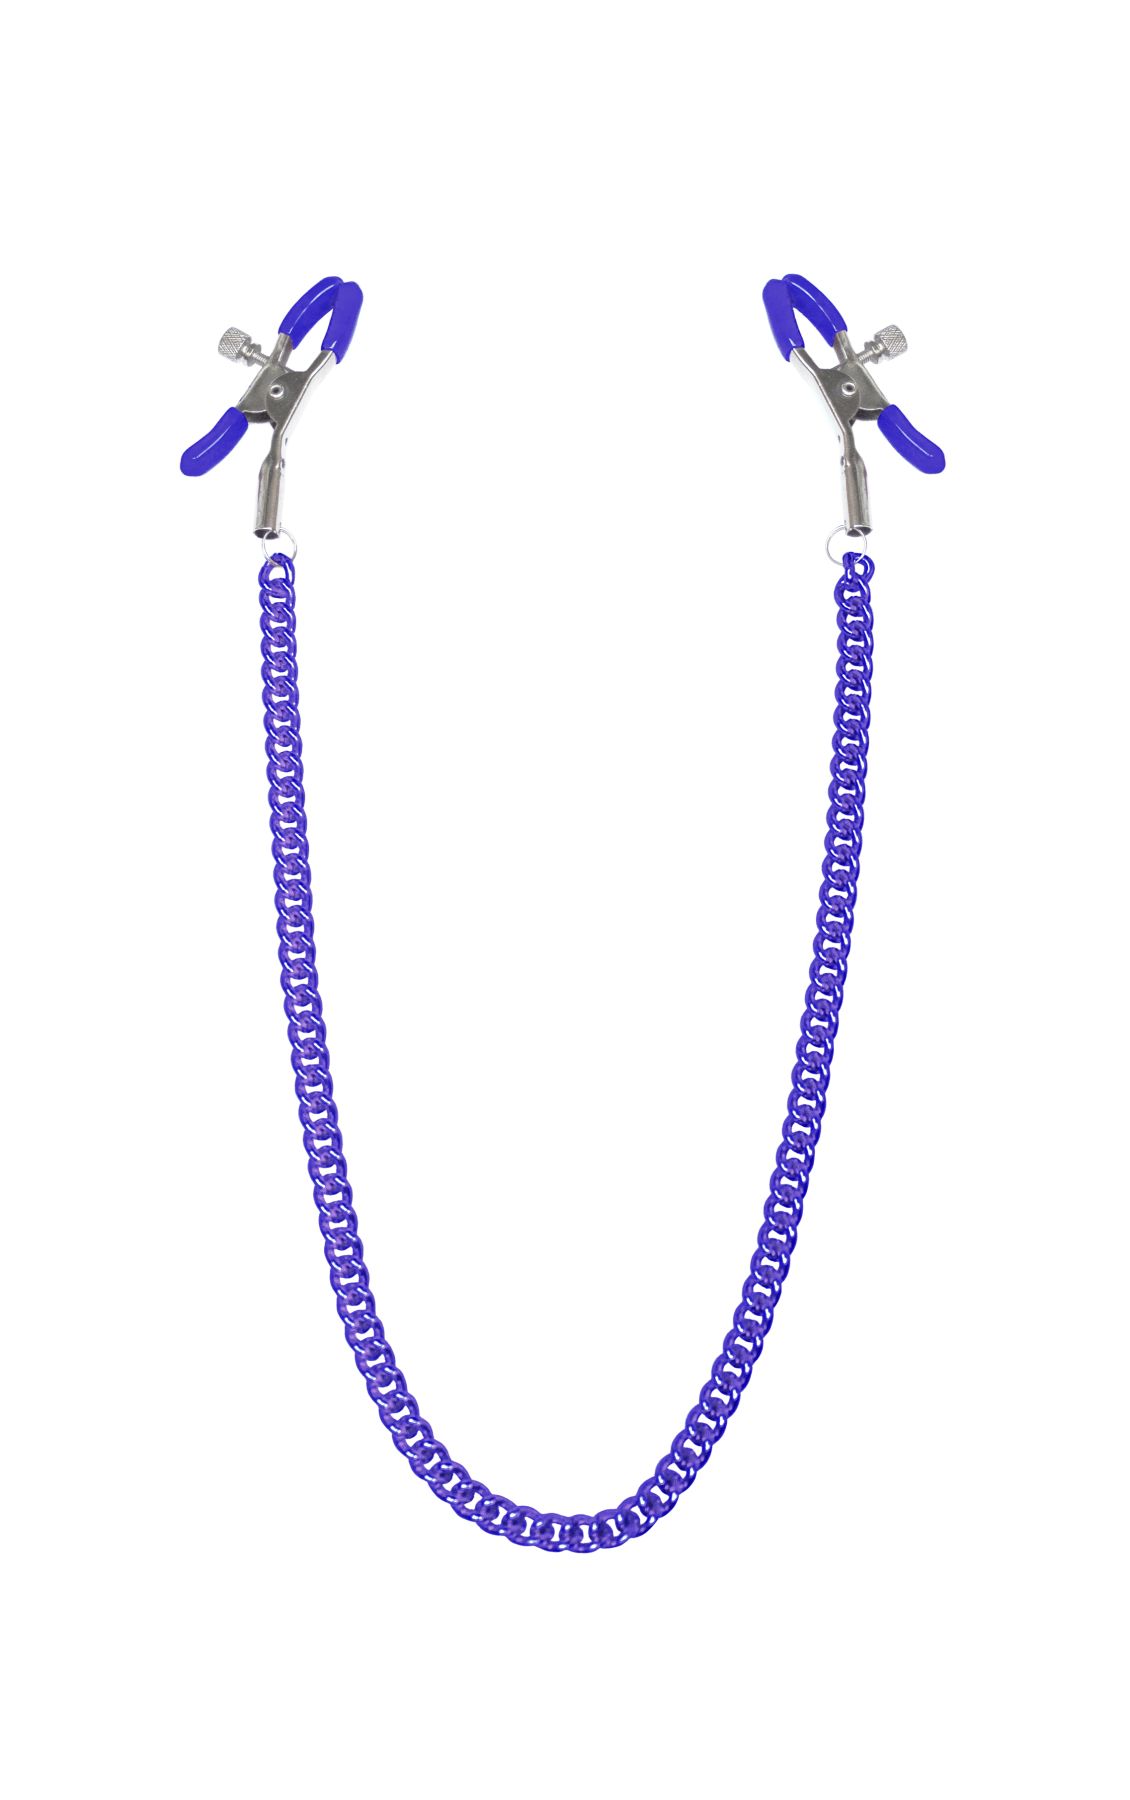 Затискачі для соск�ів з ланцюжком Feral Feelings - Nipple clamps Classic, фіолетовий